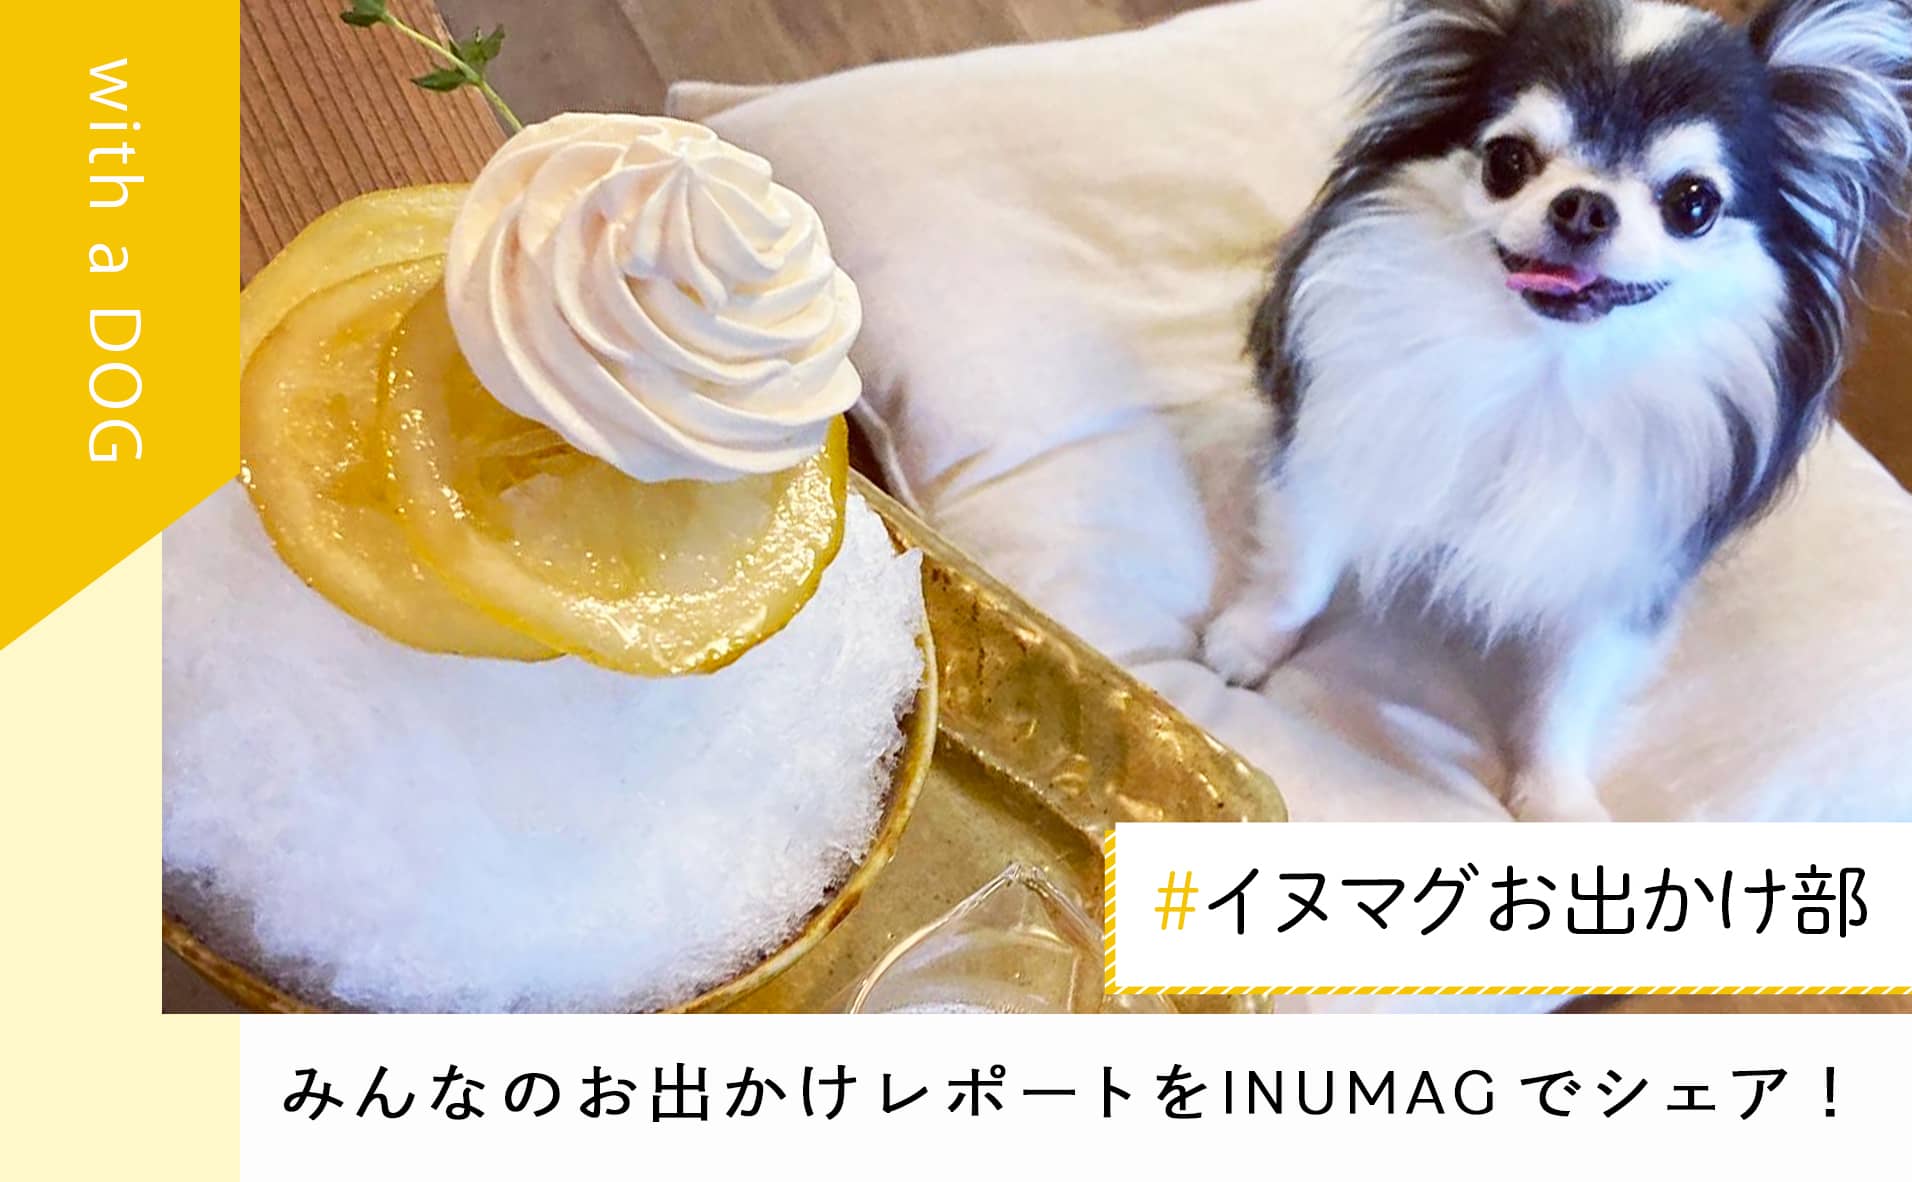 犬と一緒に”かき氷”が食べれるカフェを紹介「#イヌマグお出かけ部」